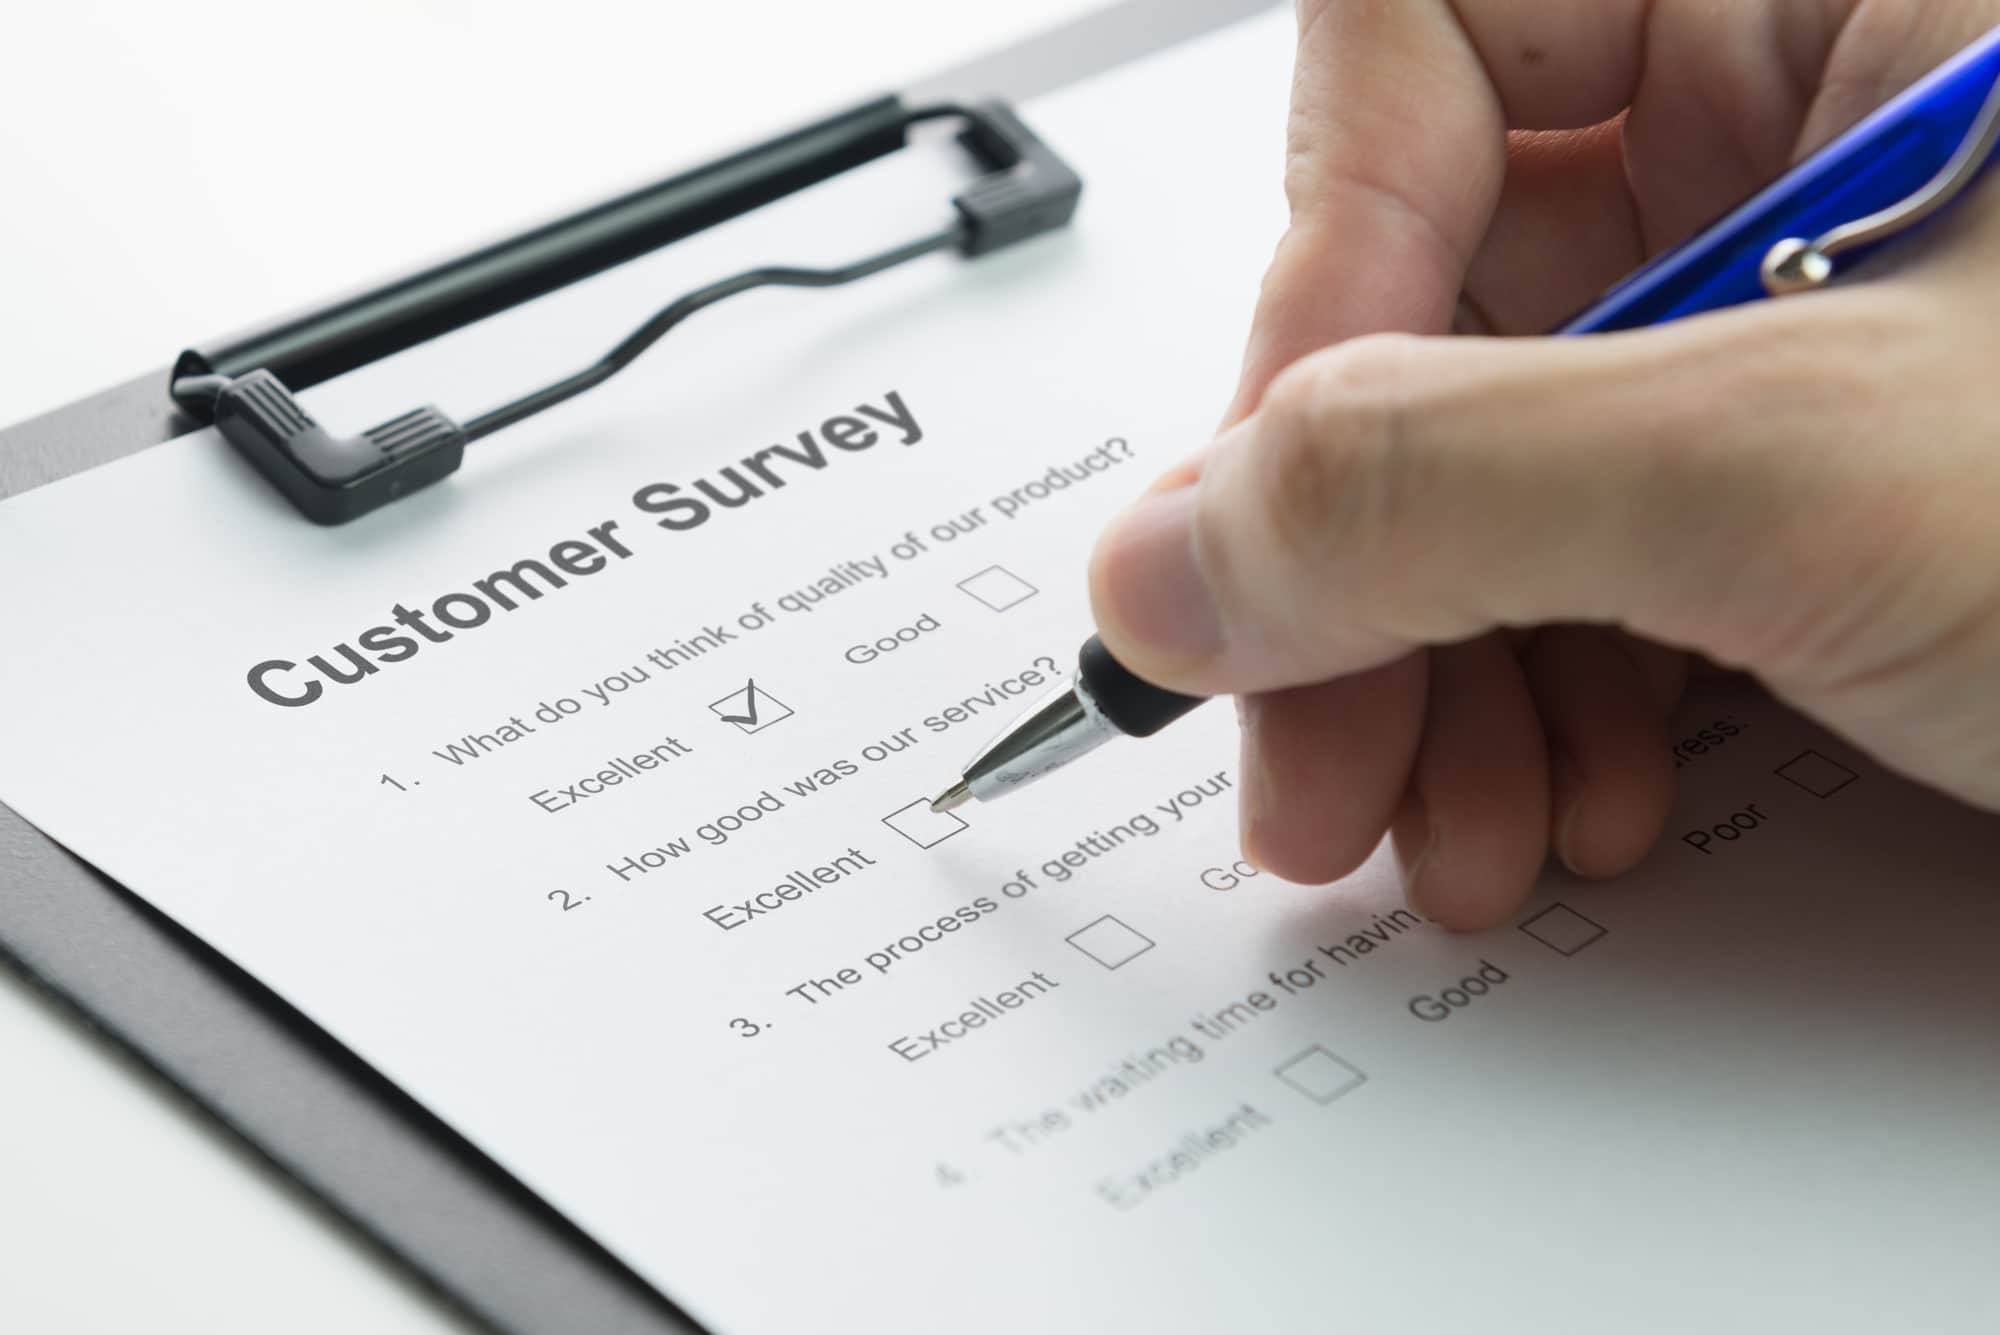 how to do customer segmentation survey